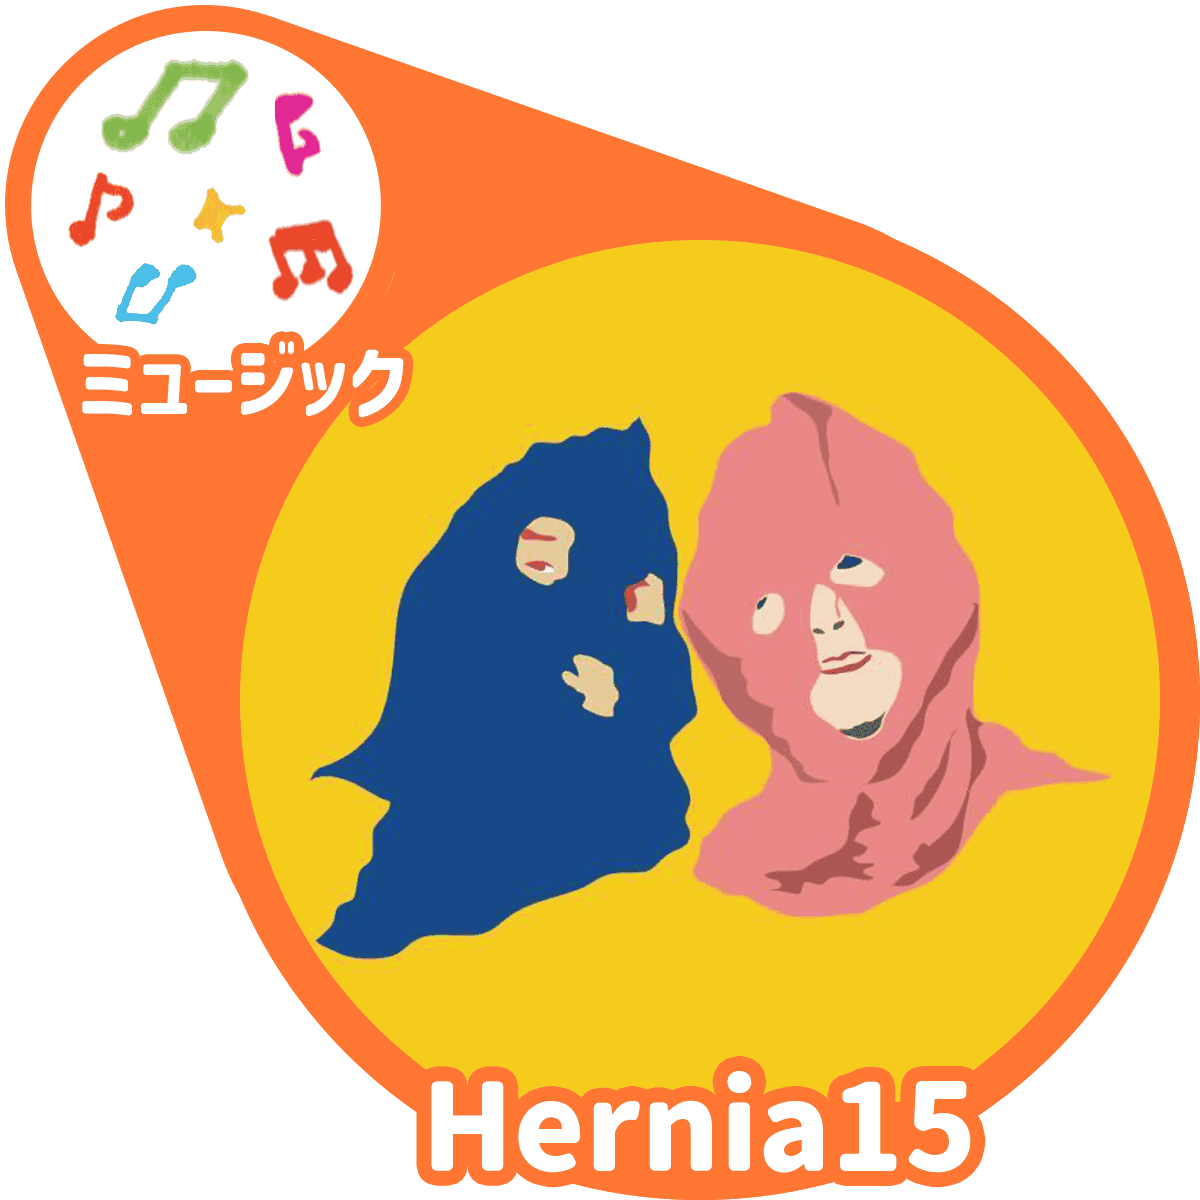 Hernia15